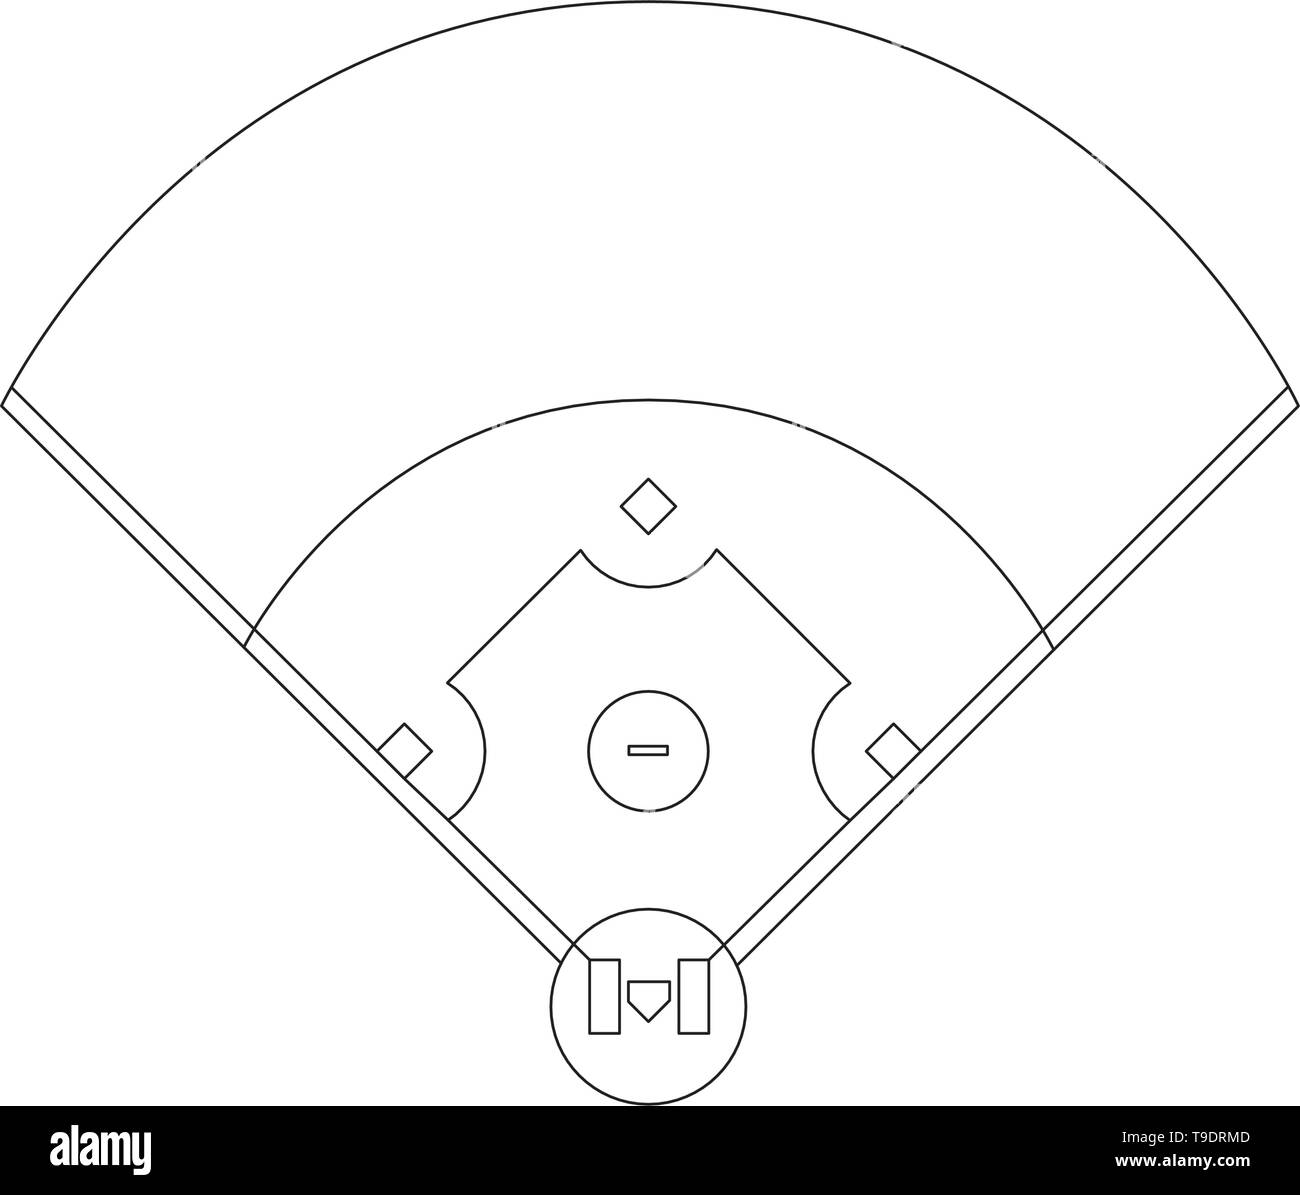 Campo da Baseball panoramica linea disegno vettoriale in bianco e nero Illustrazione Vettoriale